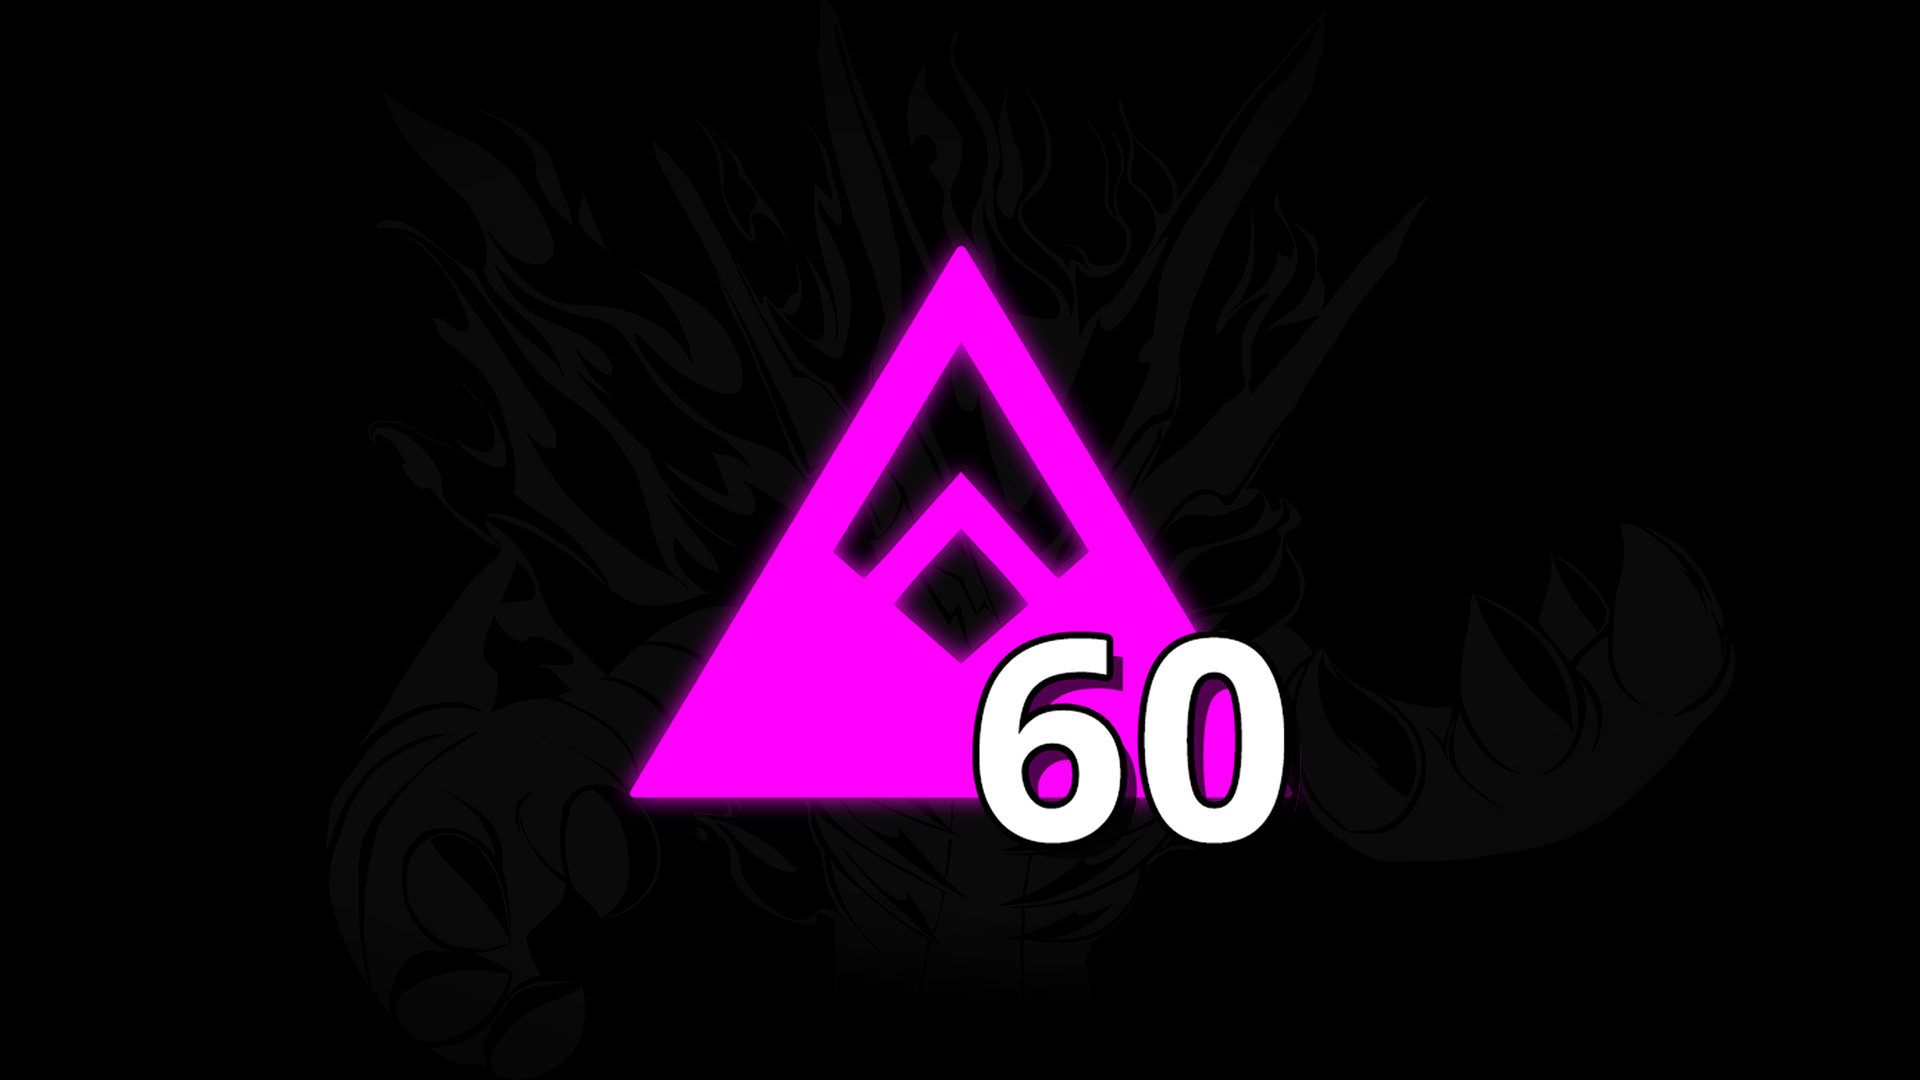 Icon for Own 60 Nexomon